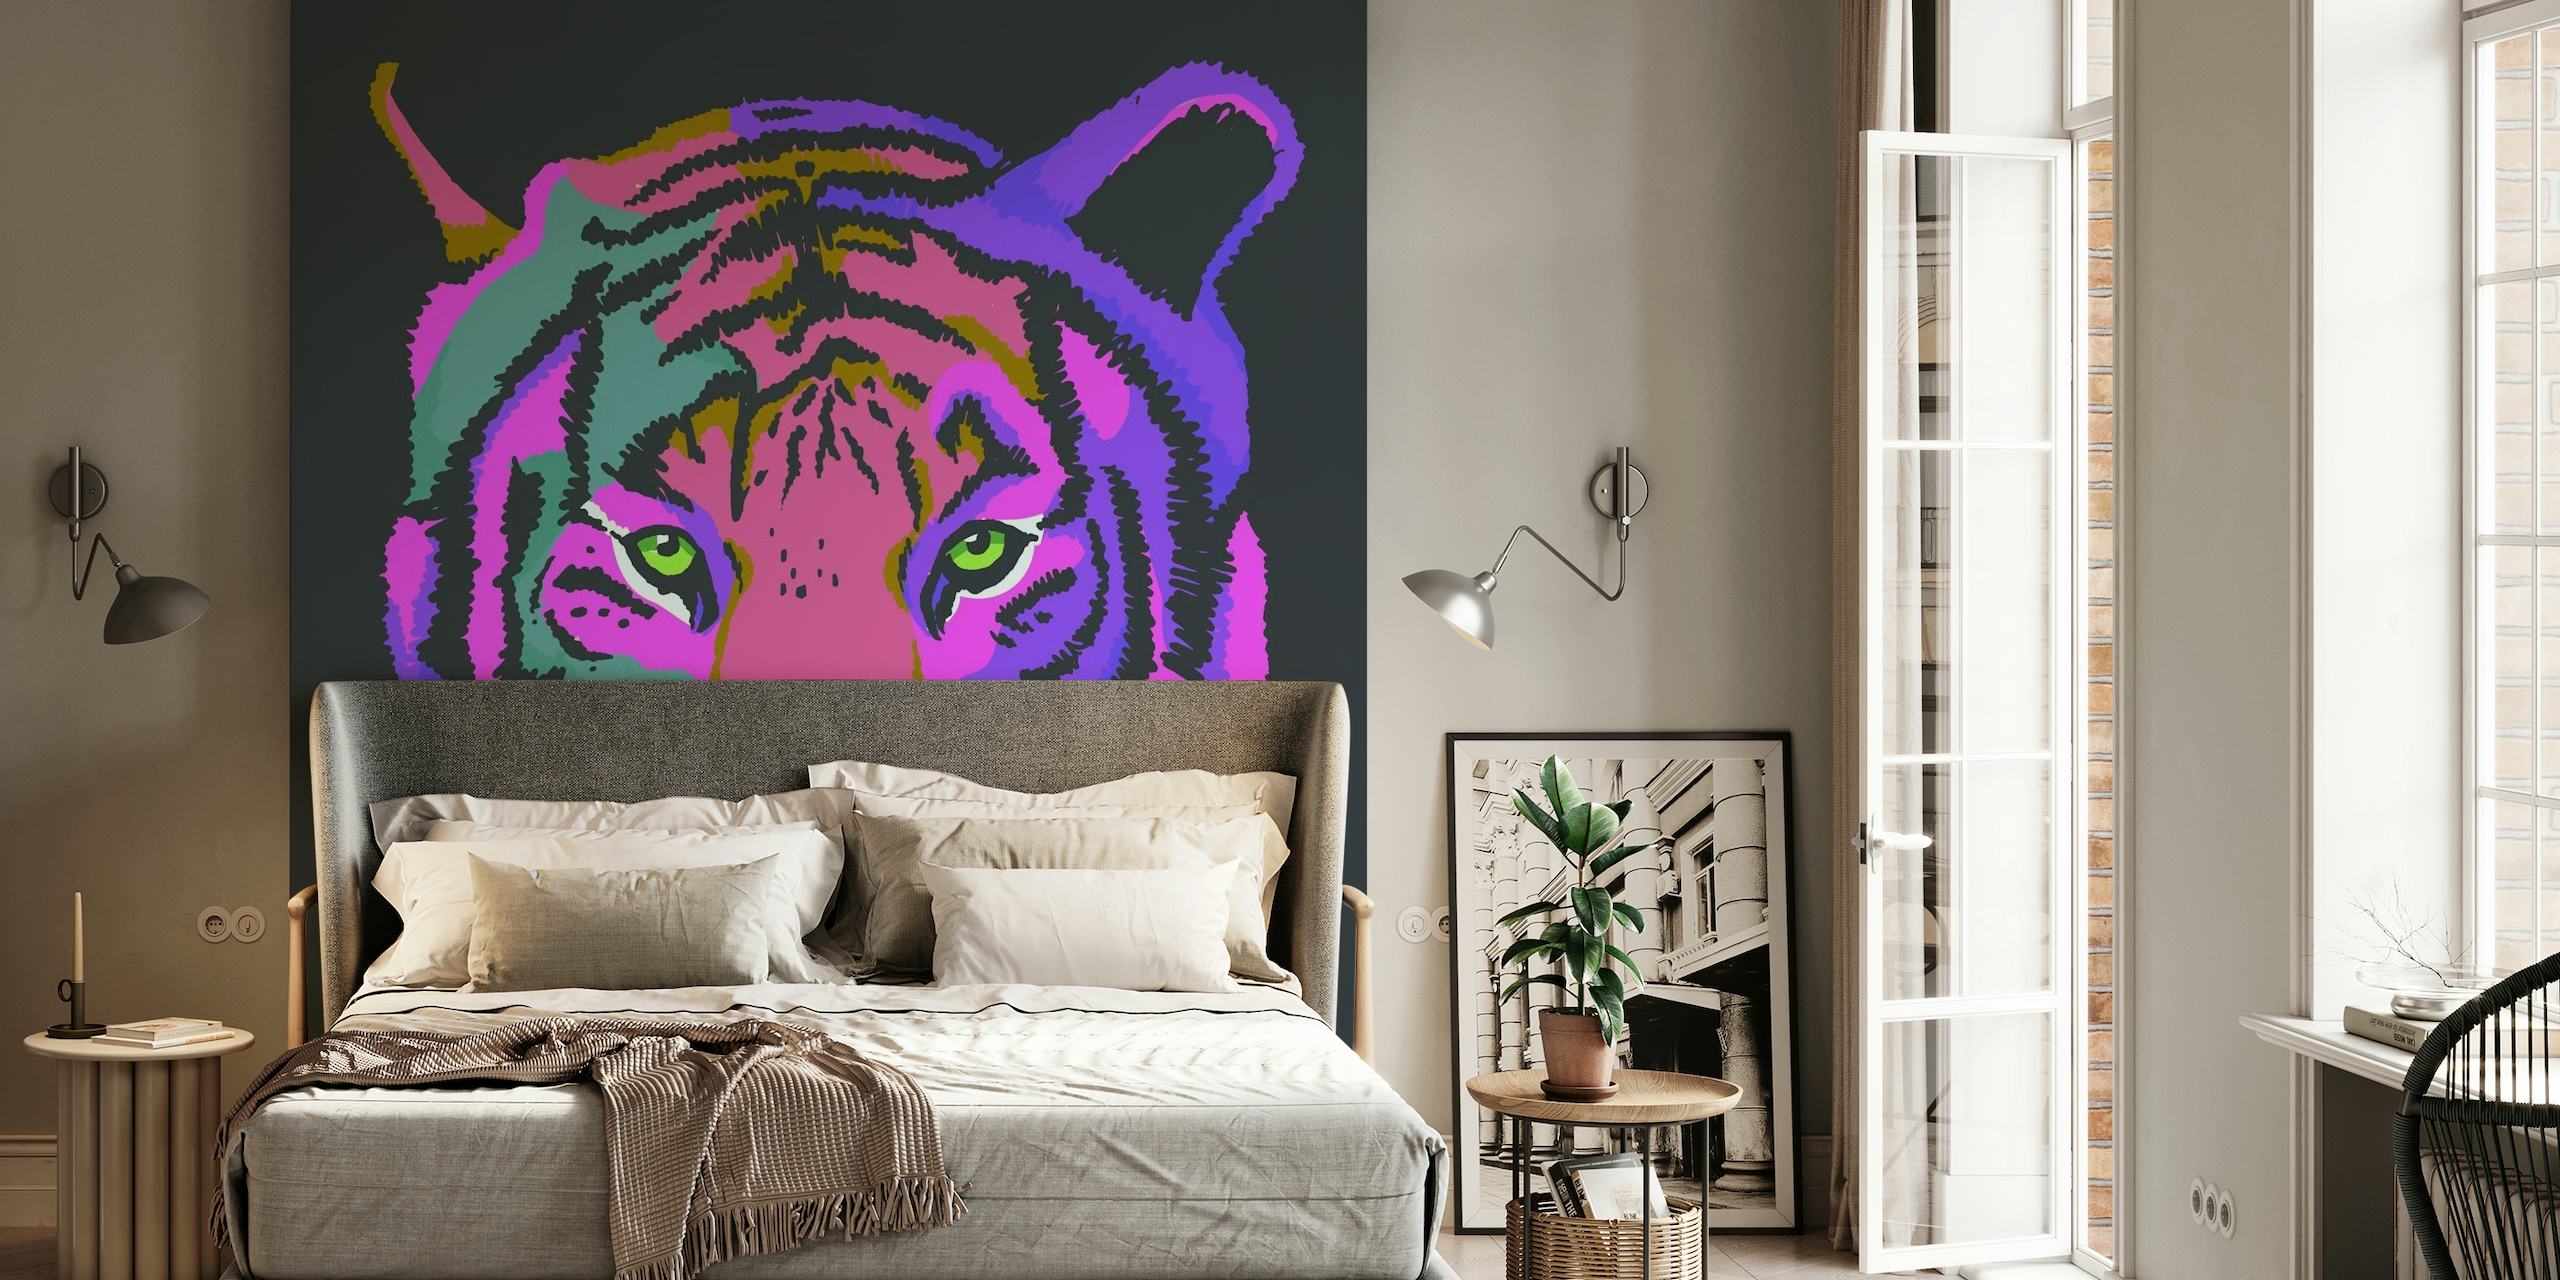 Un murale colorato che raffigura una tigre stilizzata nei toni del viola e del rosa su uno sfondo scuro.